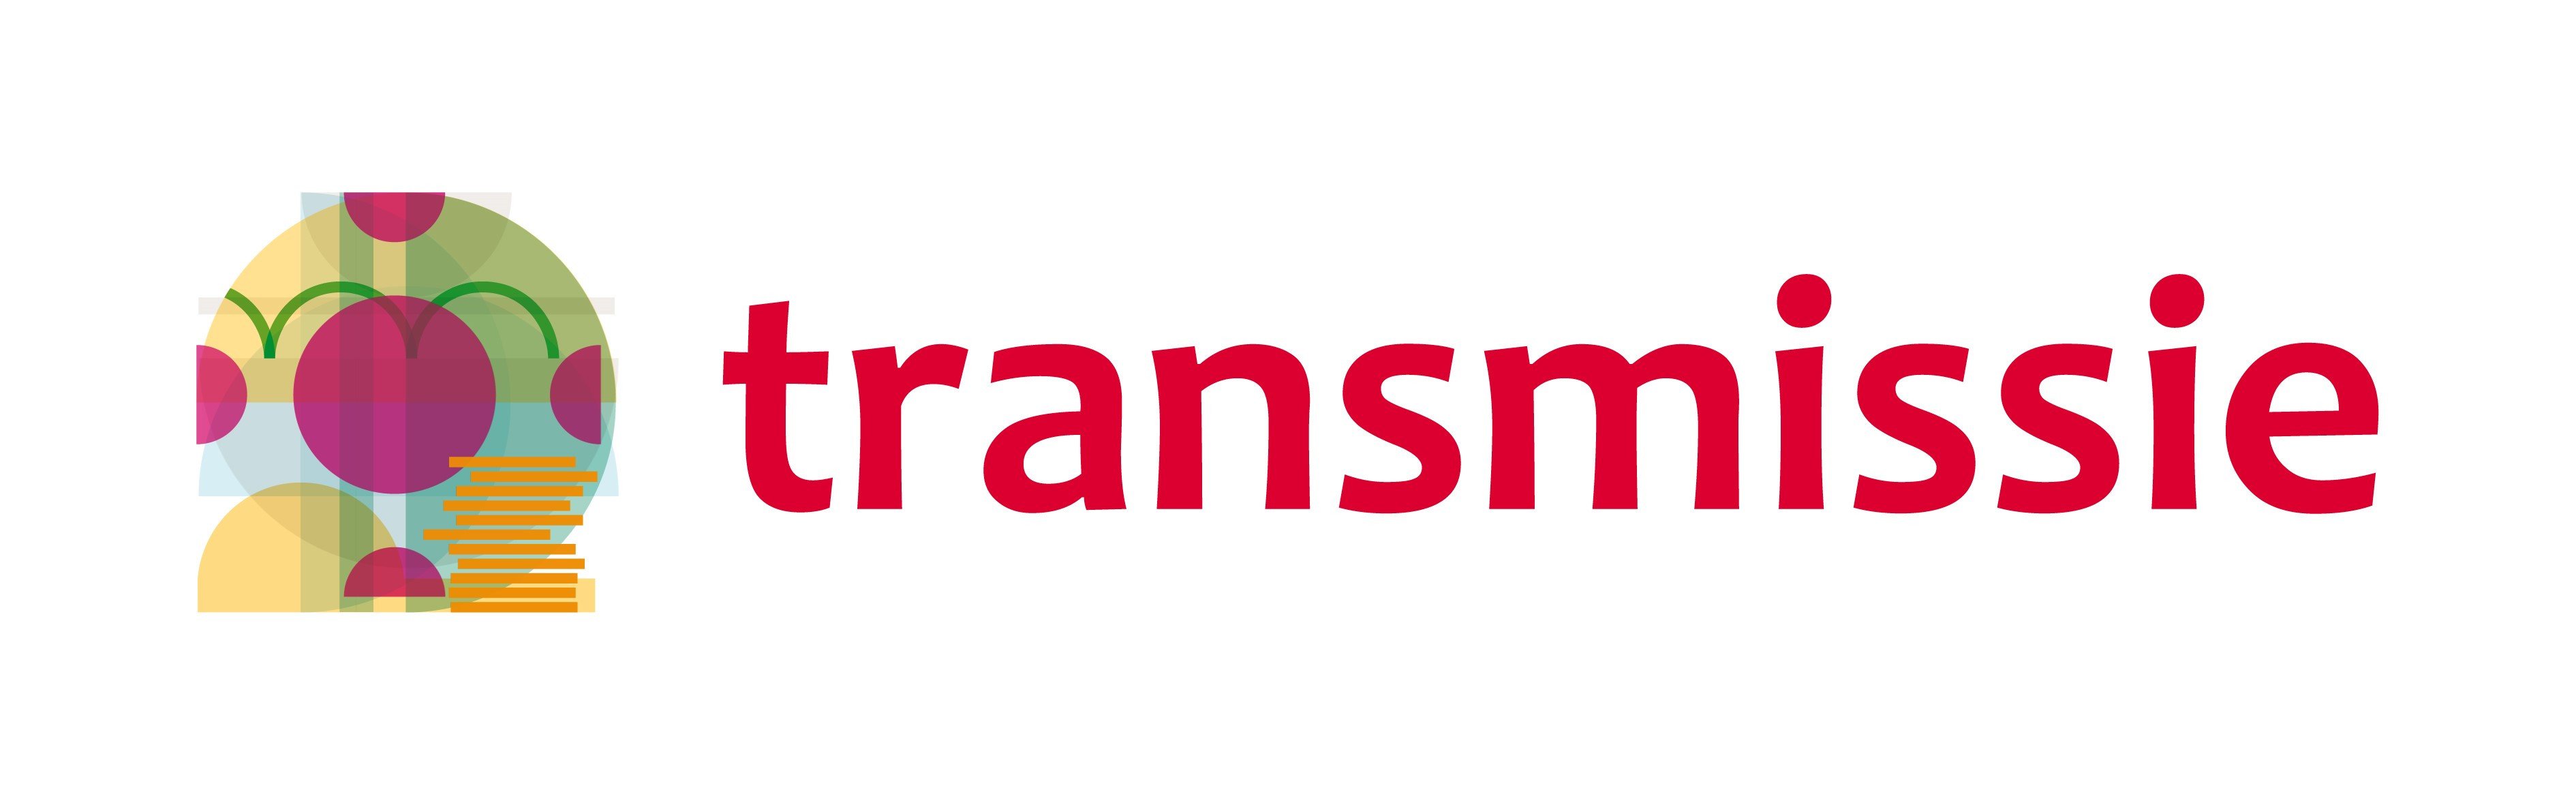 Transmissie-logo-compleet.jpg